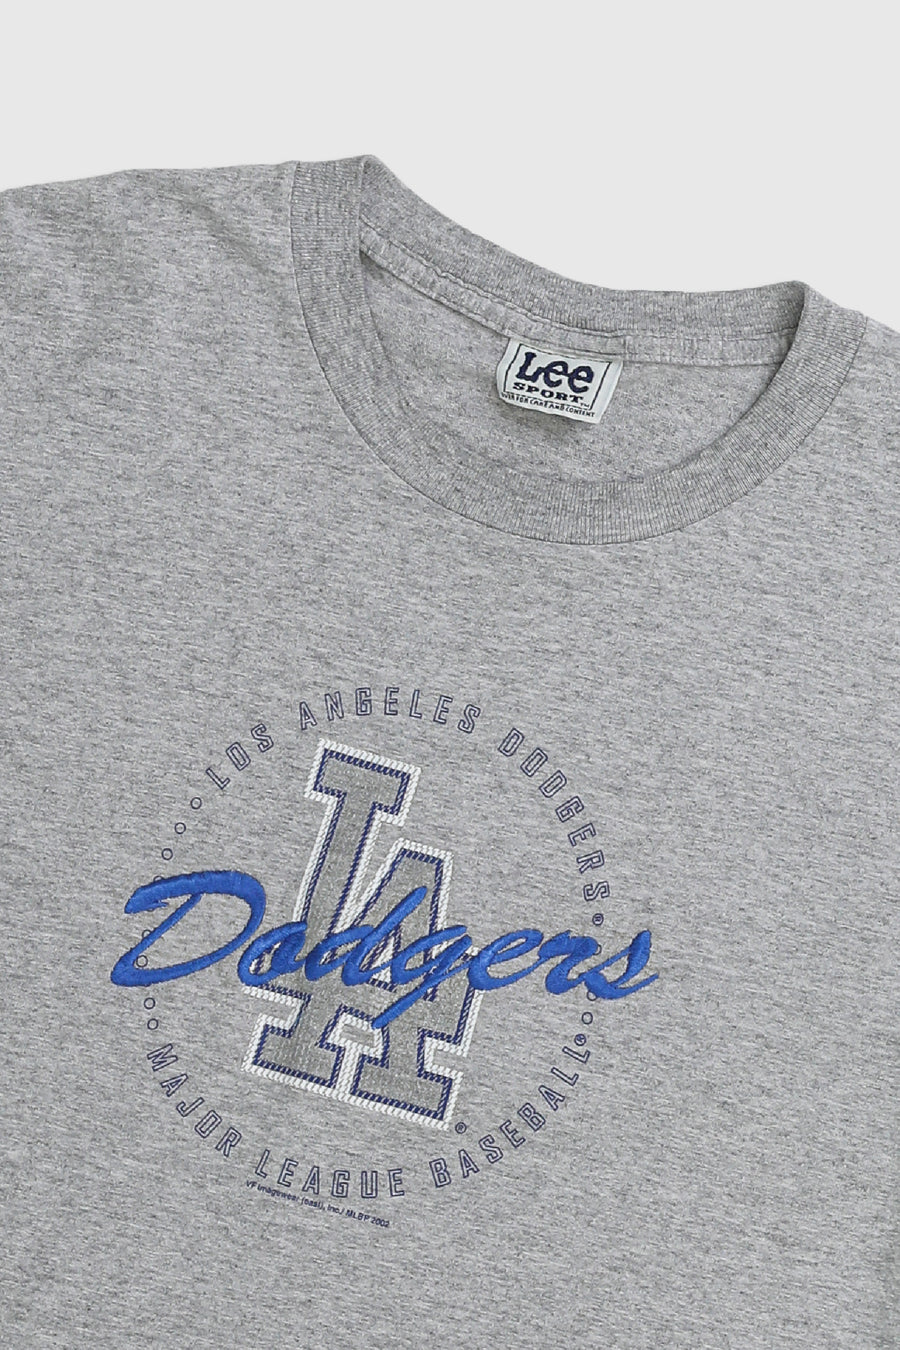 Vintage LA Dodgers MLB Tee